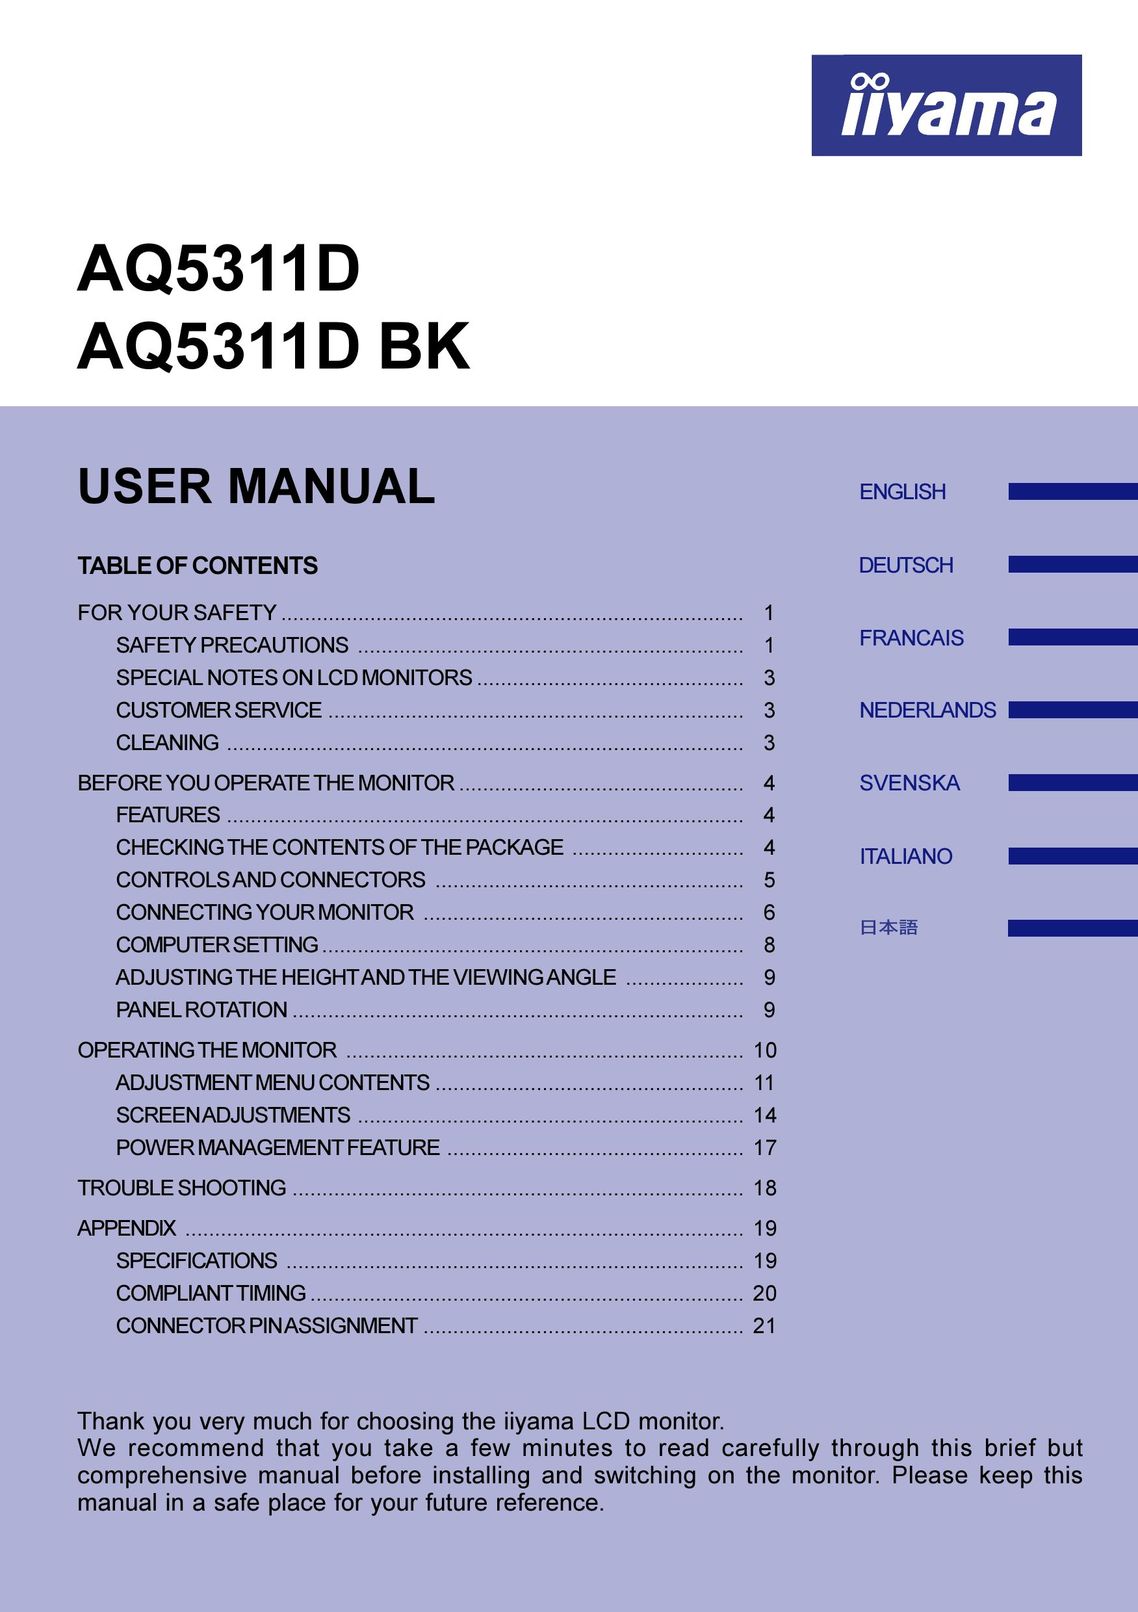 Iiyama AQ5311D Computer Monitor User Manual